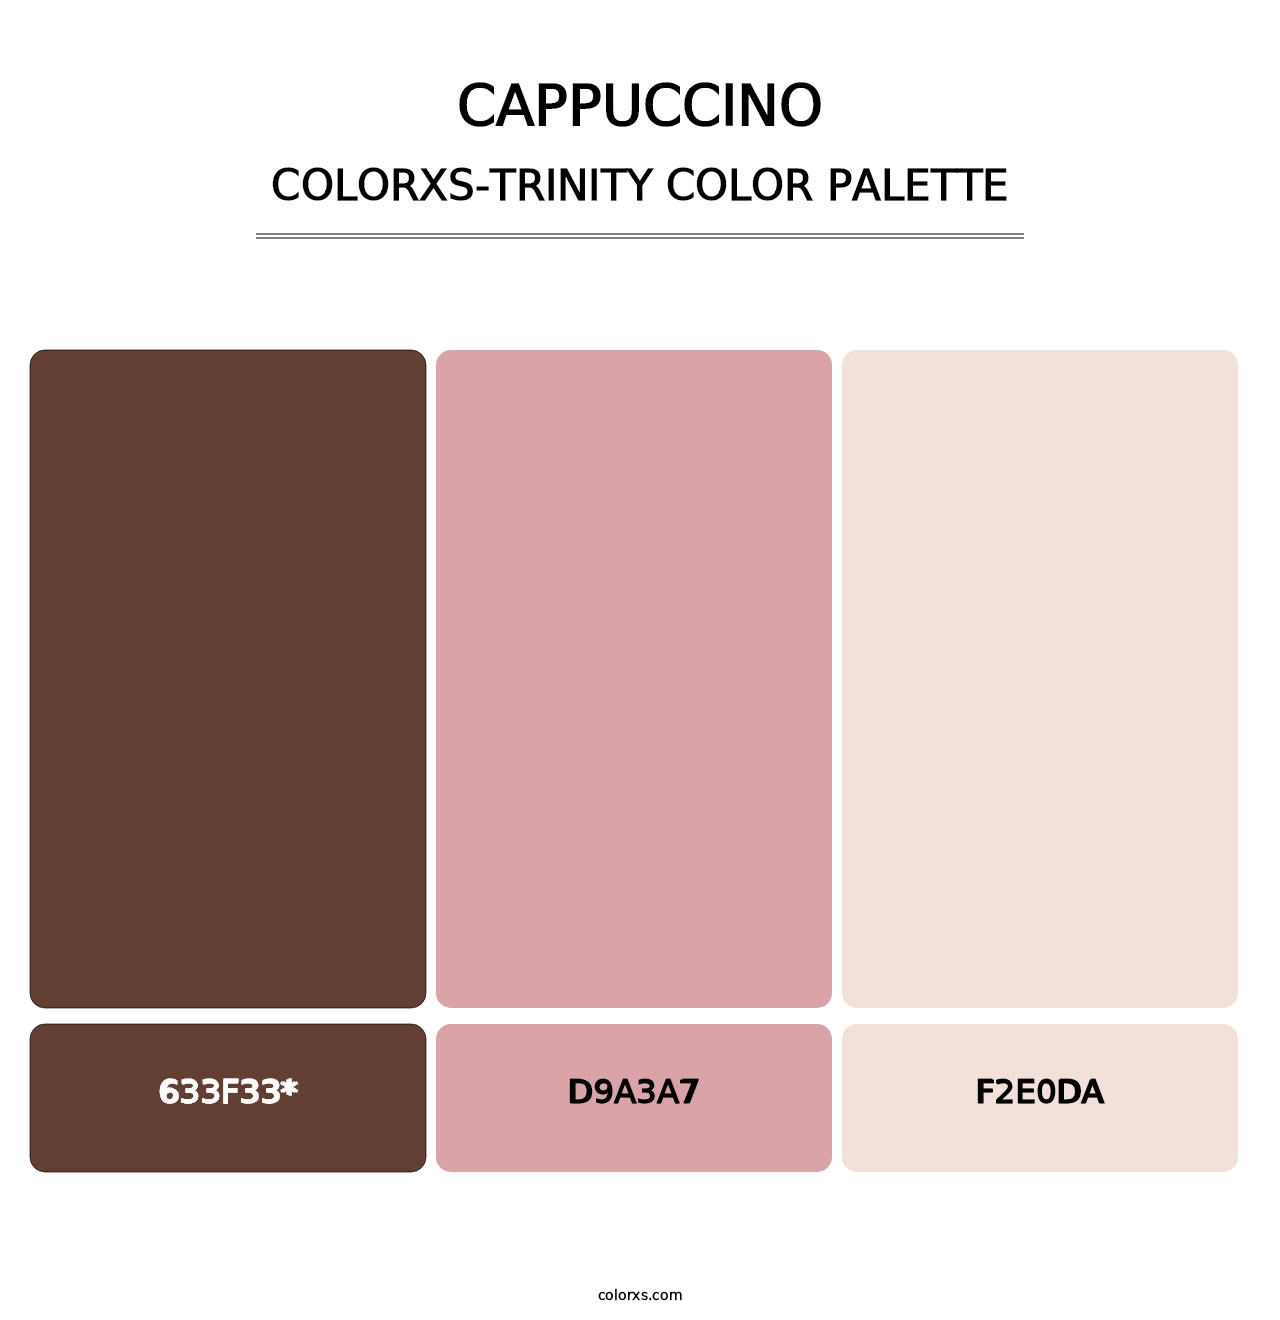 Cappuccino - Colorxs Trinity Palette